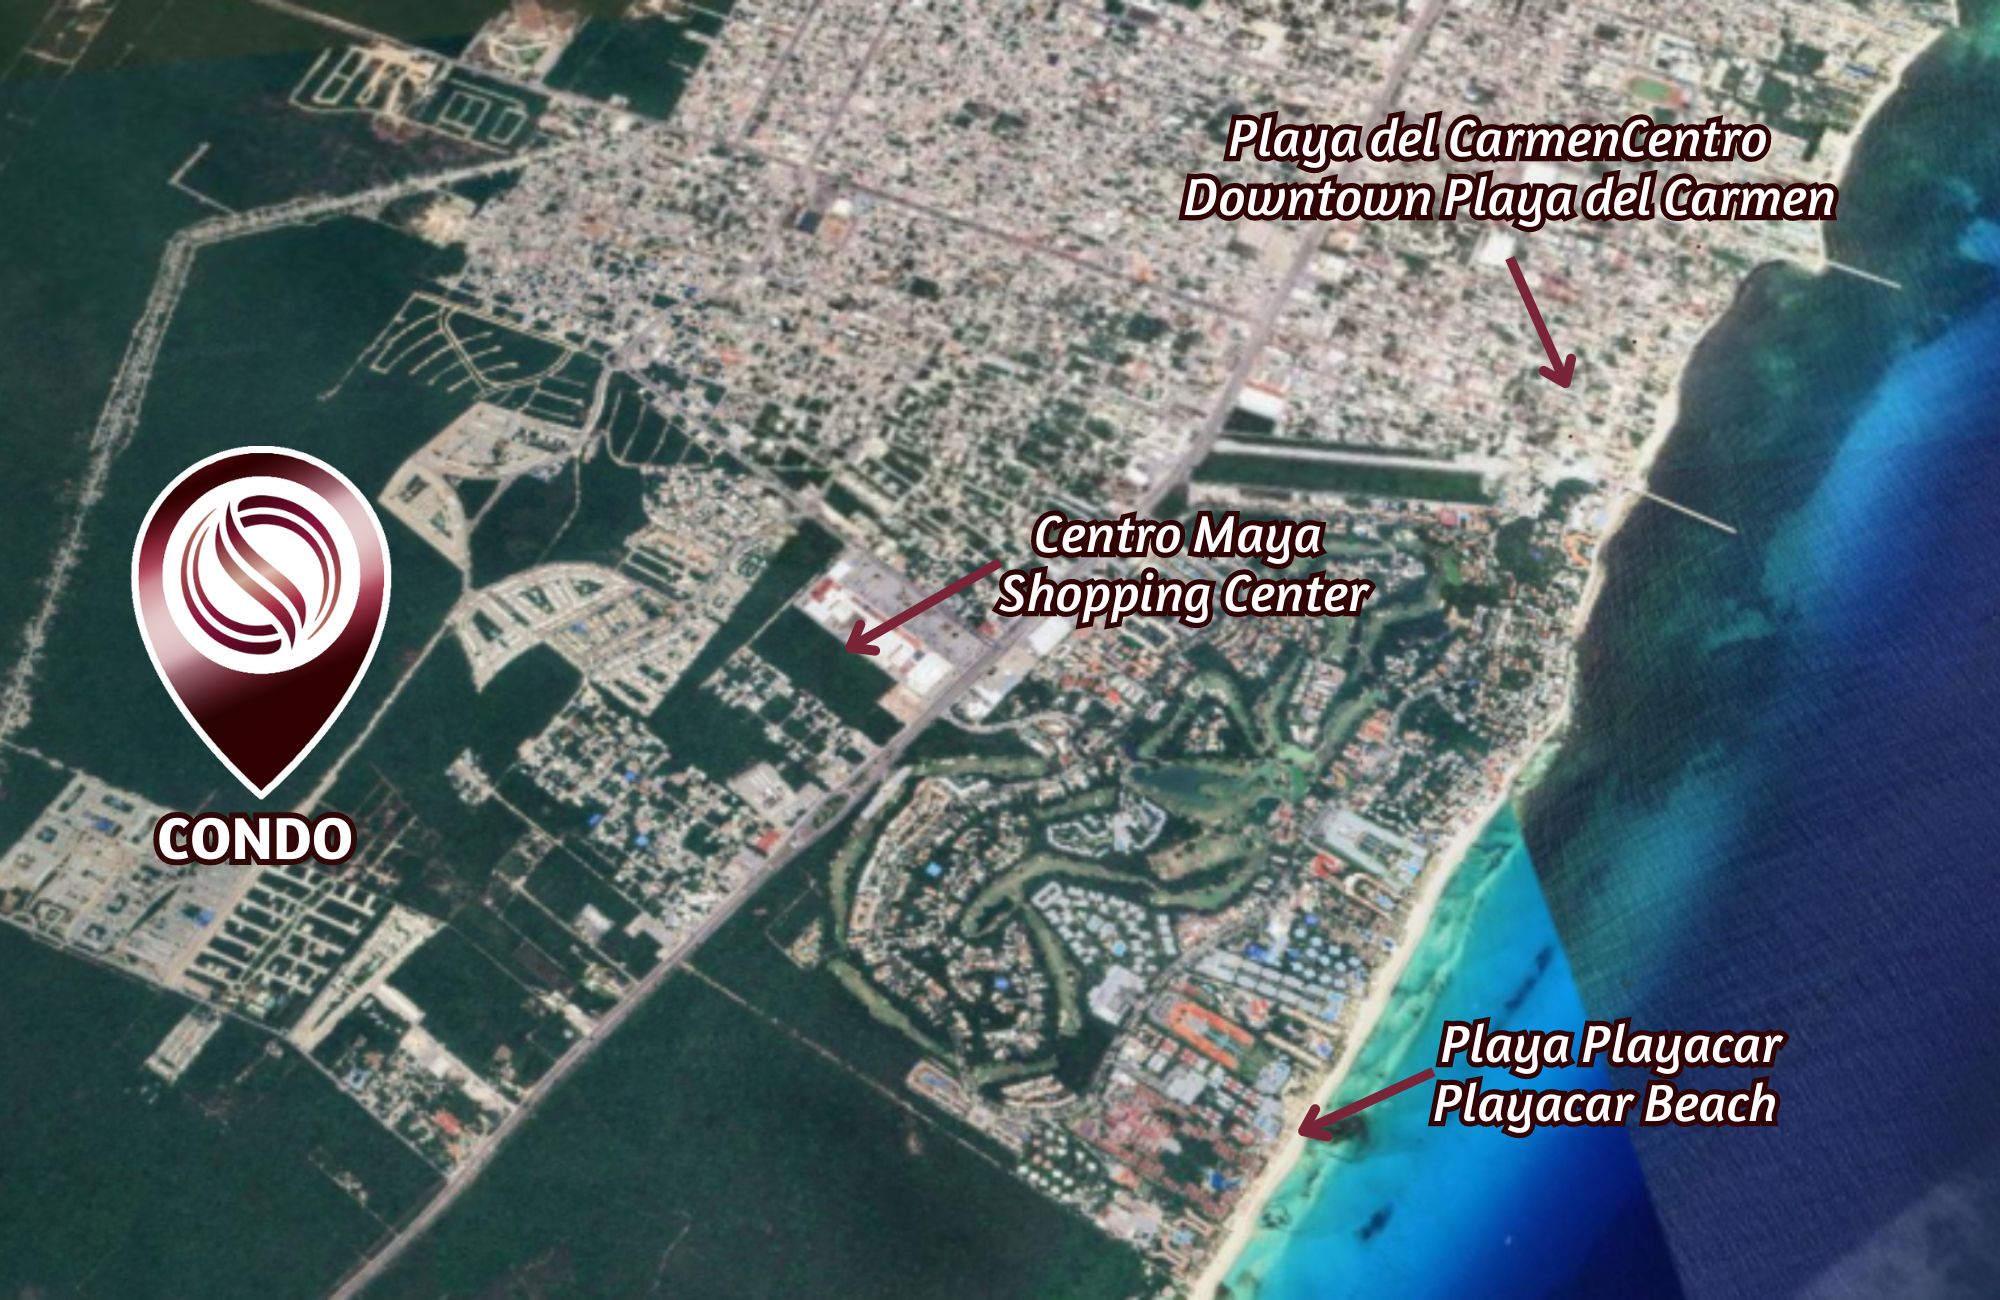 Departamento con alberca infinity, jacuzzi, area de hamacas, gimnasio, co-working, concierge, pre-construccion Playa del Carmen